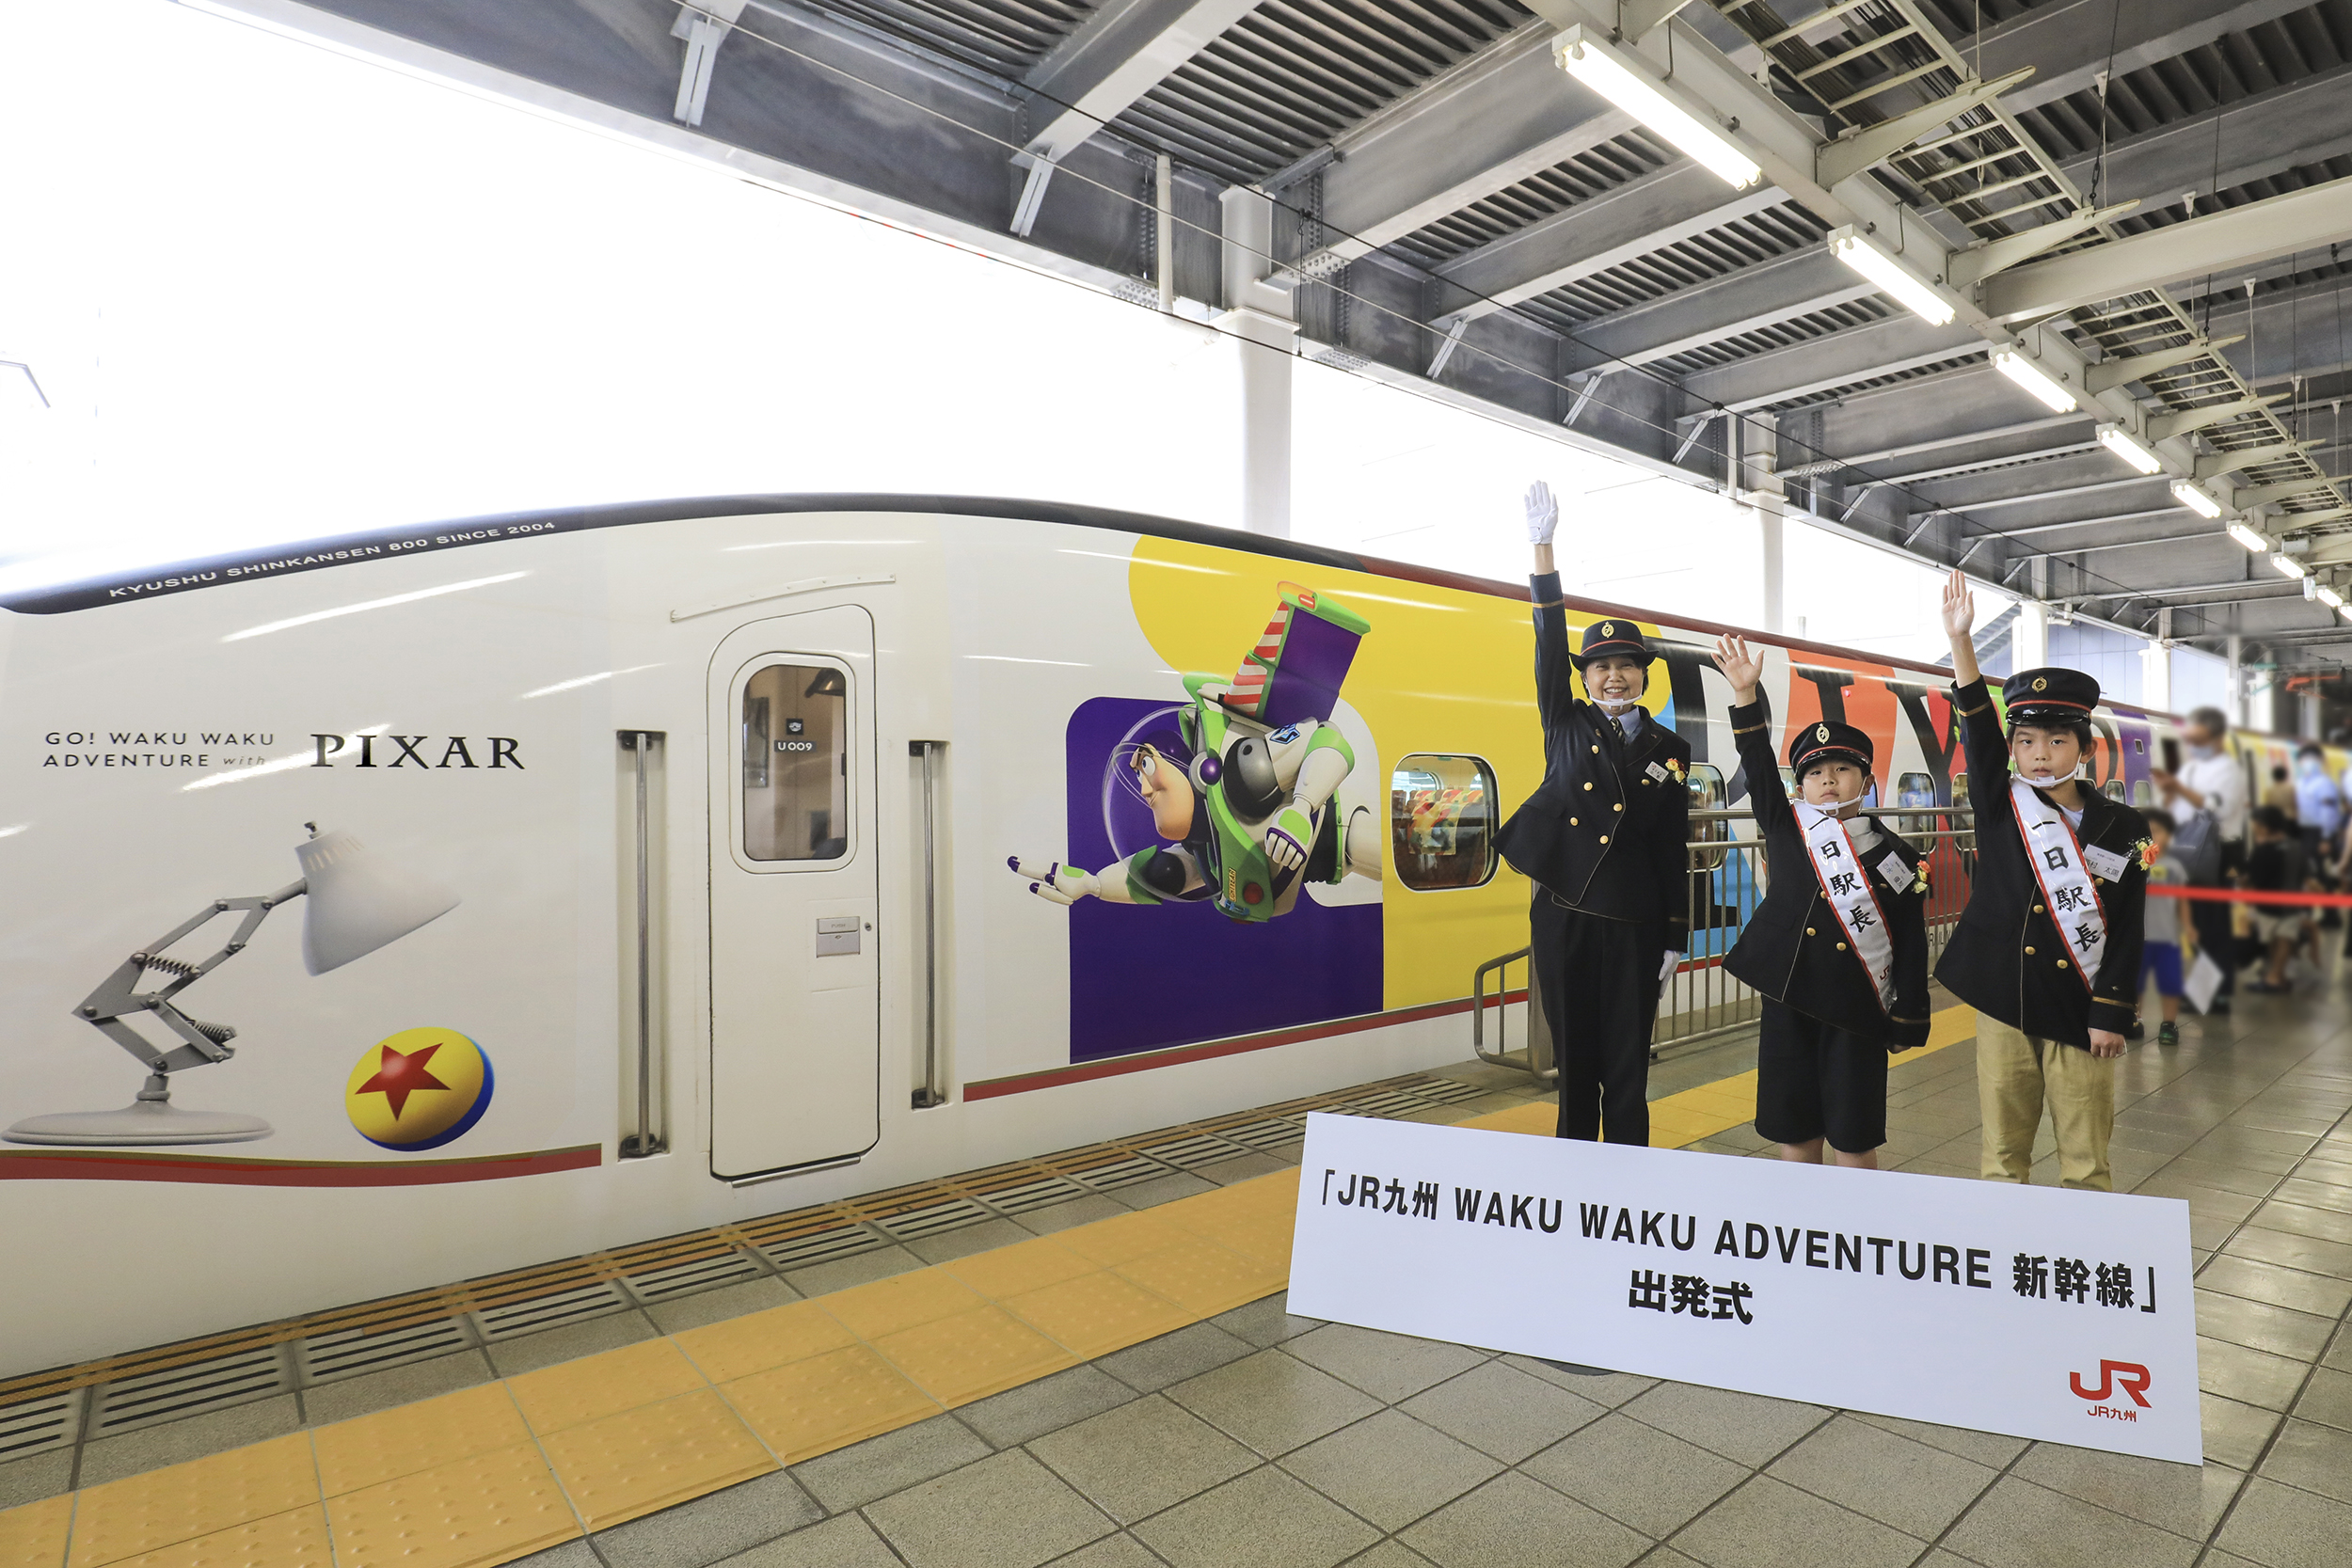 ピクサーの仲間たちと 列車に乗って九州を冒険しよう Jr九州 Waku Waku Adventure 新幹線 運行開始 九州旅客鉄道株式会社のプレスリリース